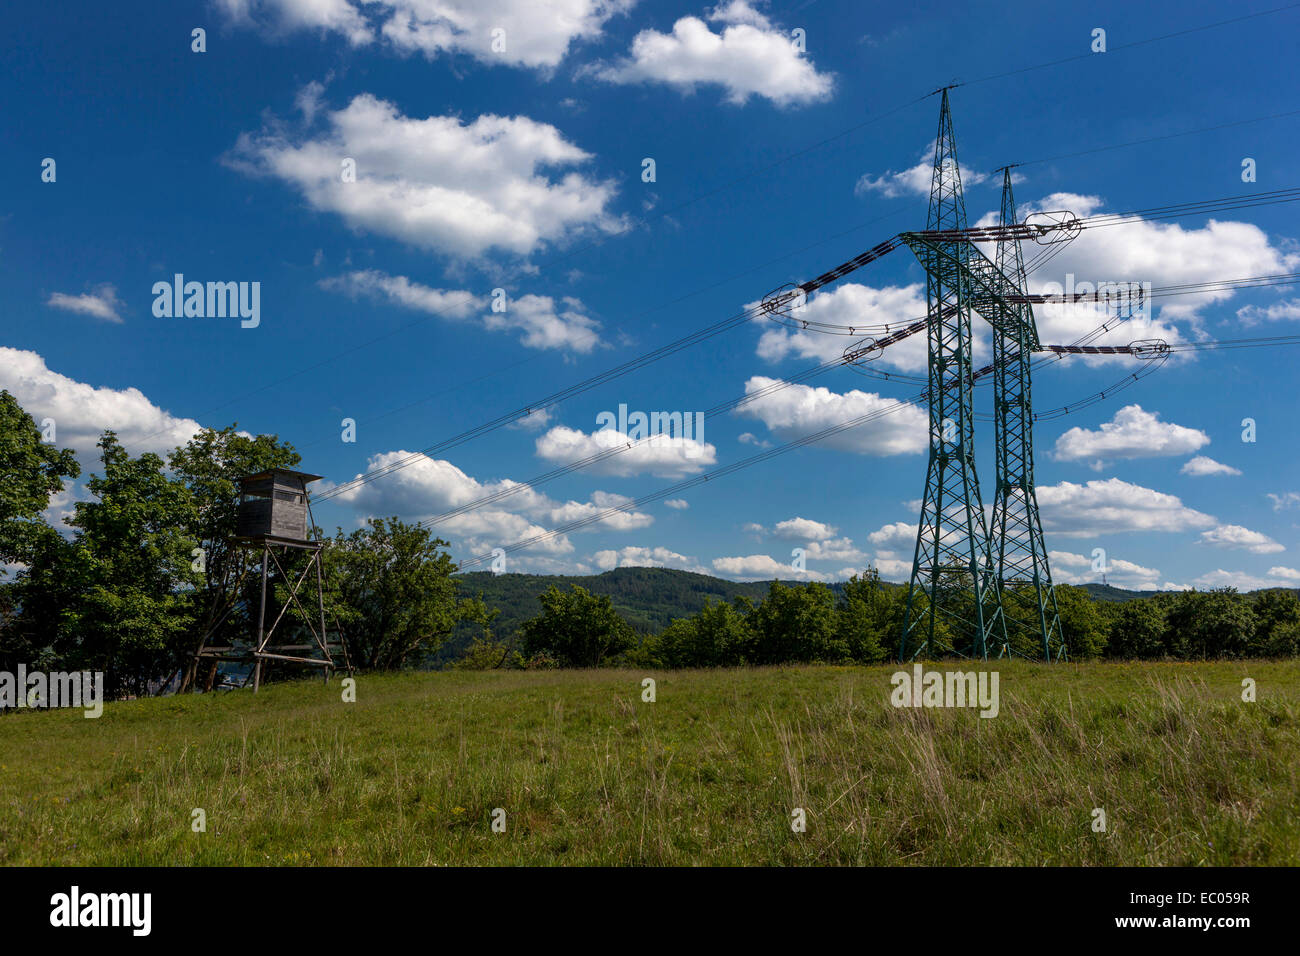 Electricity pylon, clouds on a blue sky background Czech Republic Stock Photo